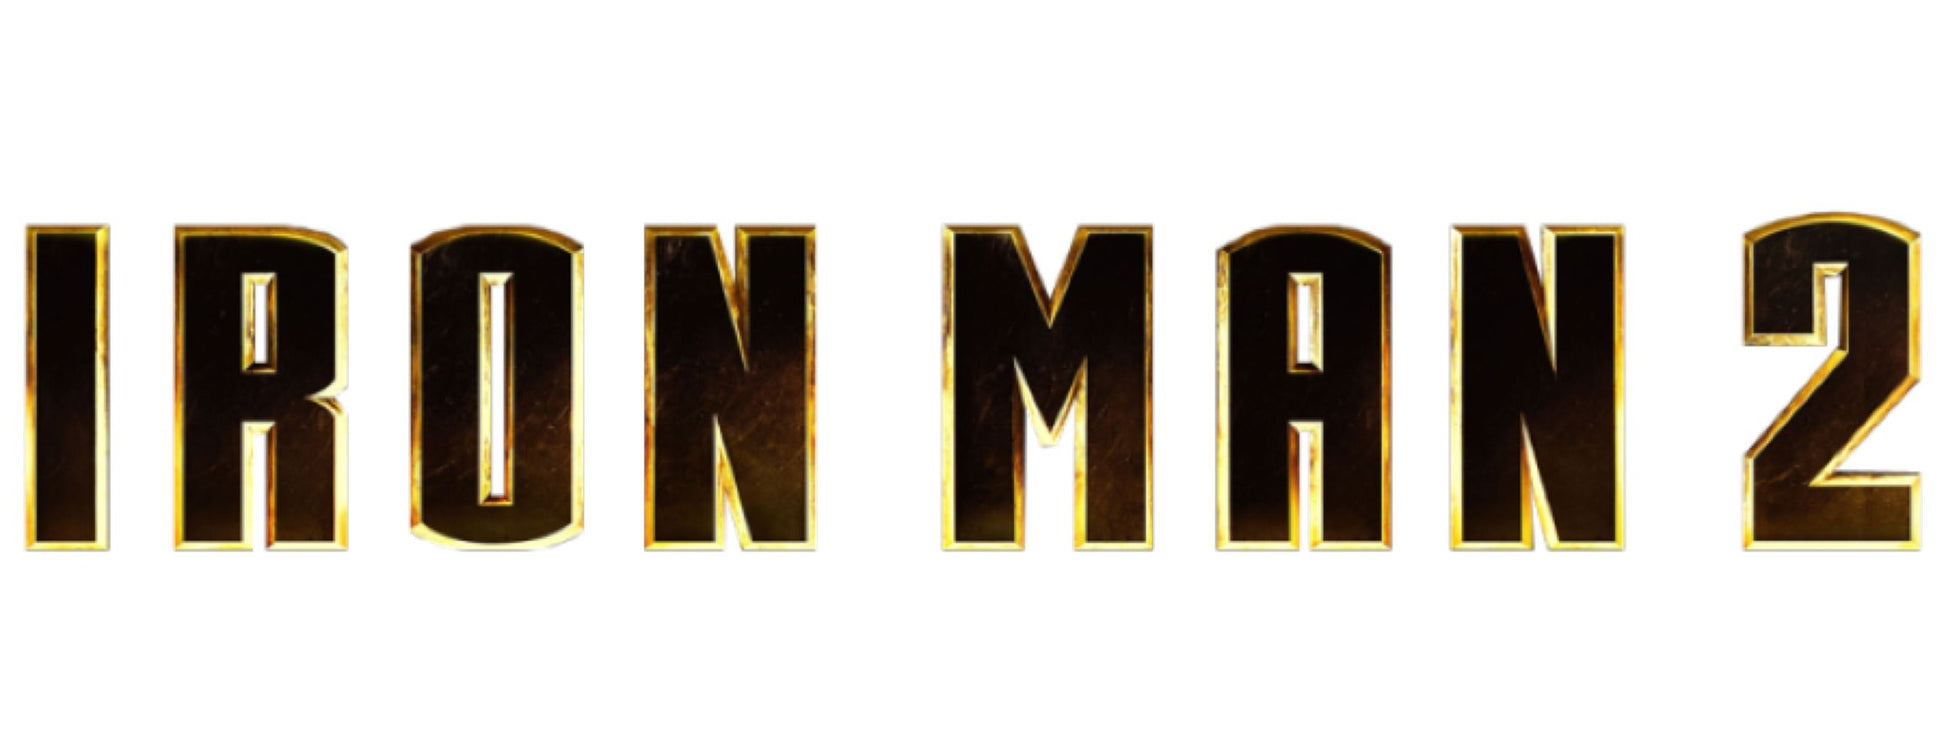 Iron Man 2 - Iron Man Mark IV with Gantry Metallic Pop! Deluxe